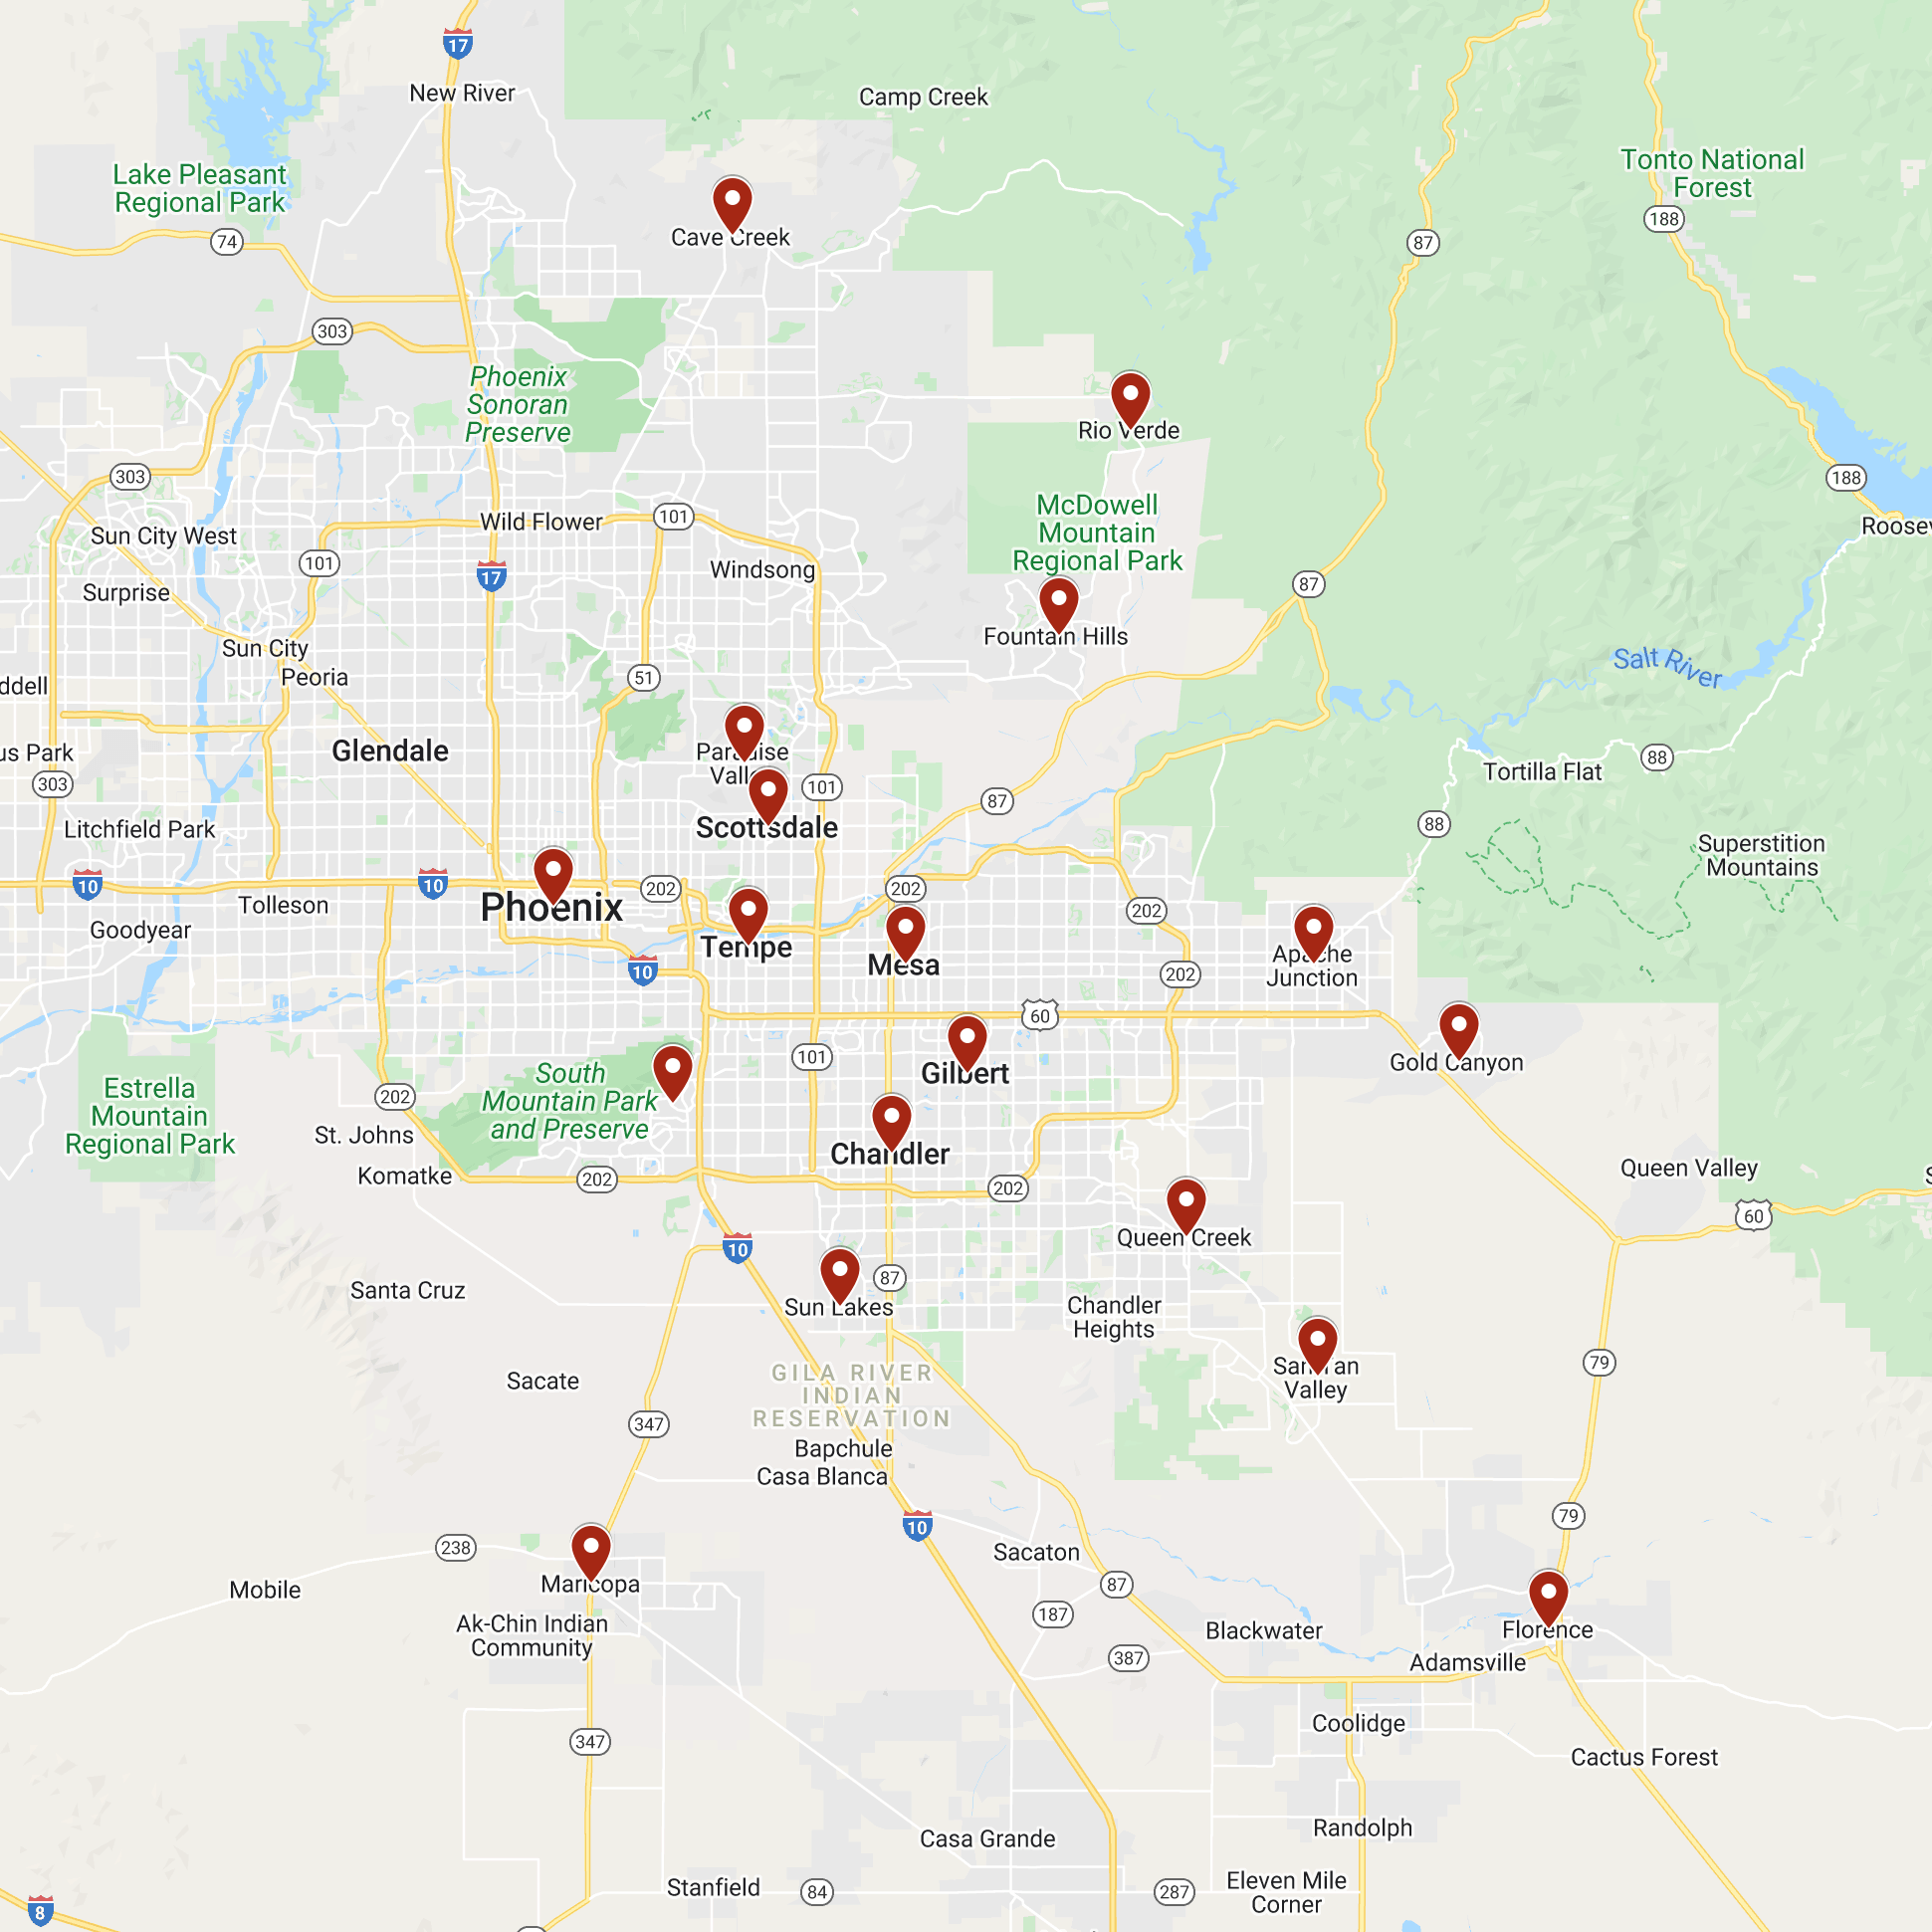 Rusty's Service Area Map